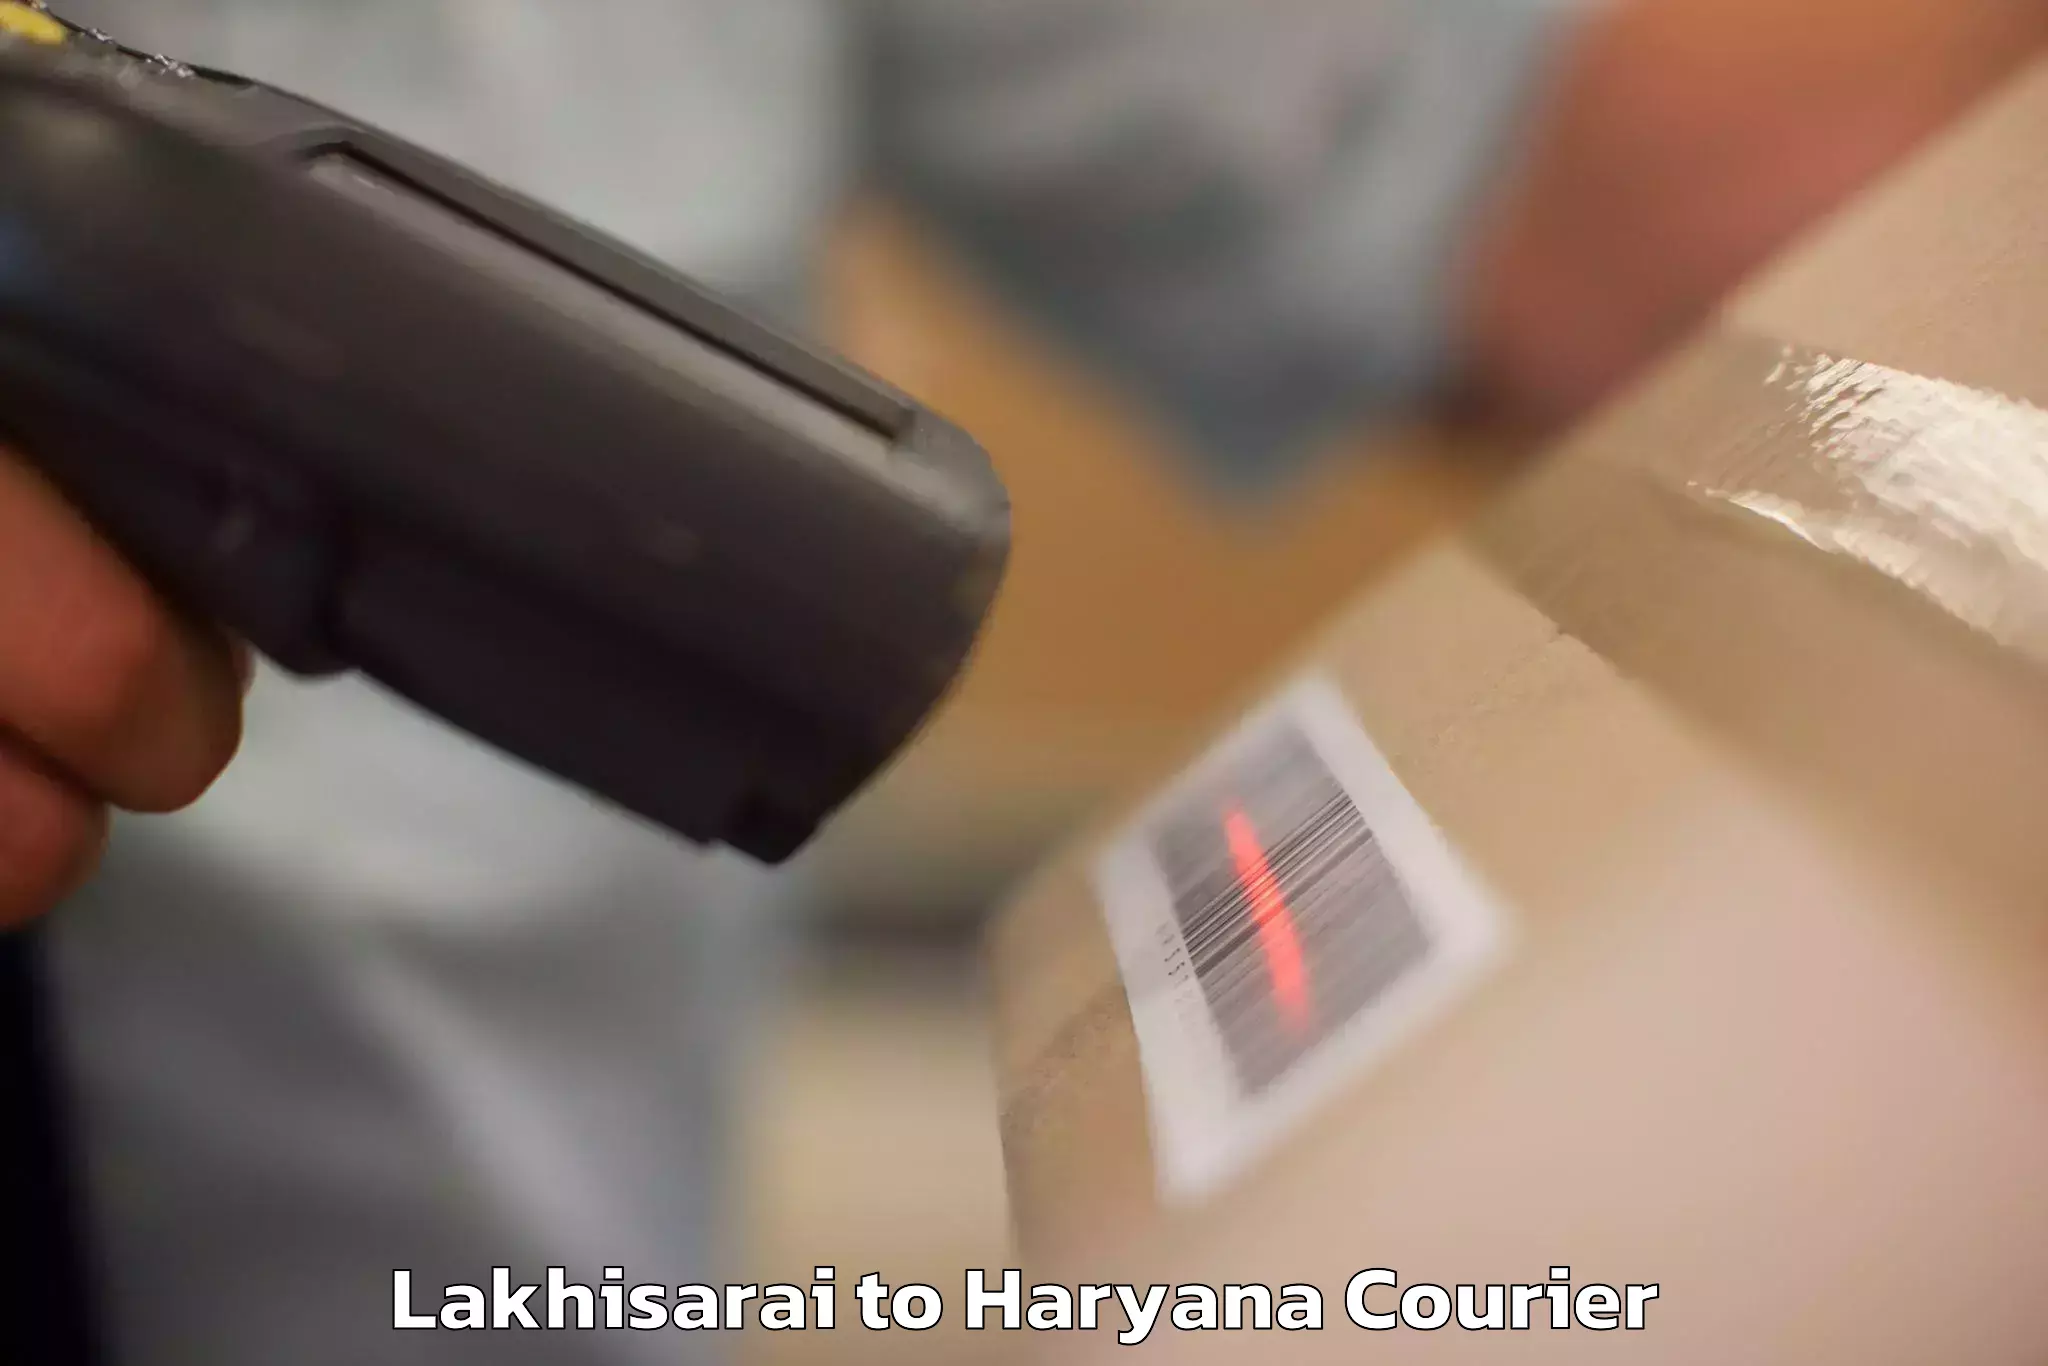 Versatile luggage courier Lakhisarai to Ambala